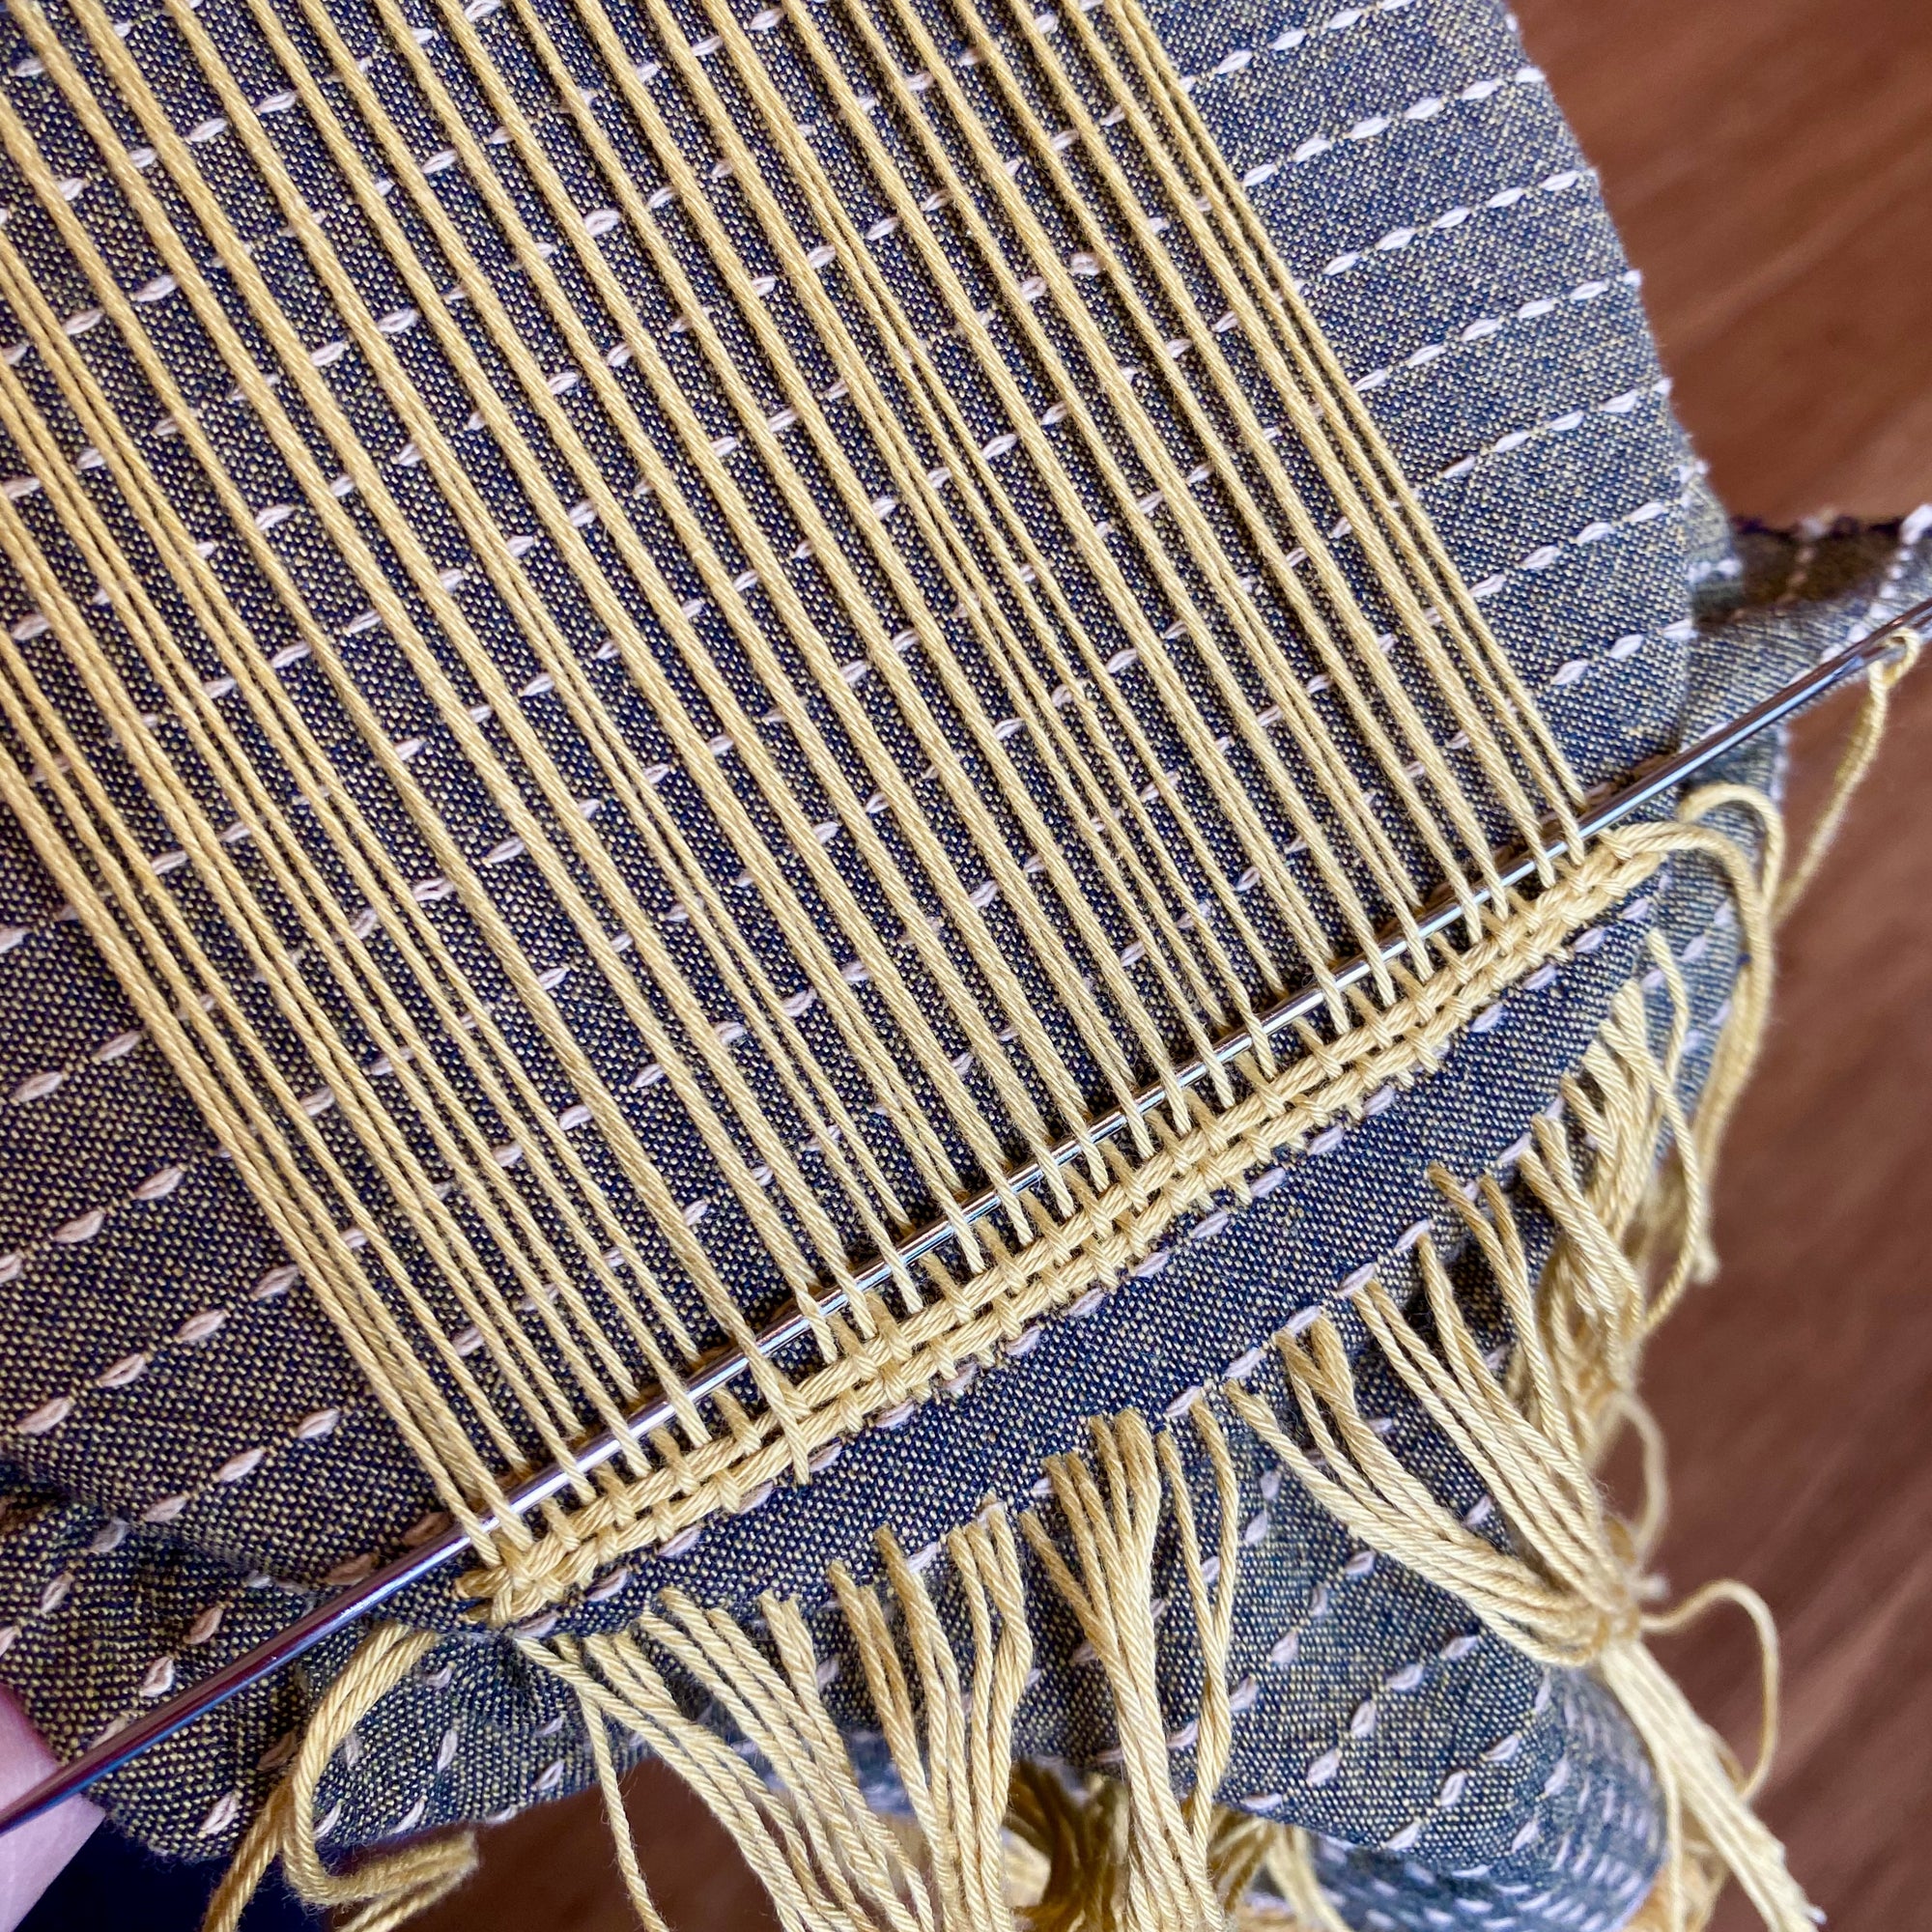 mending weaving loom 